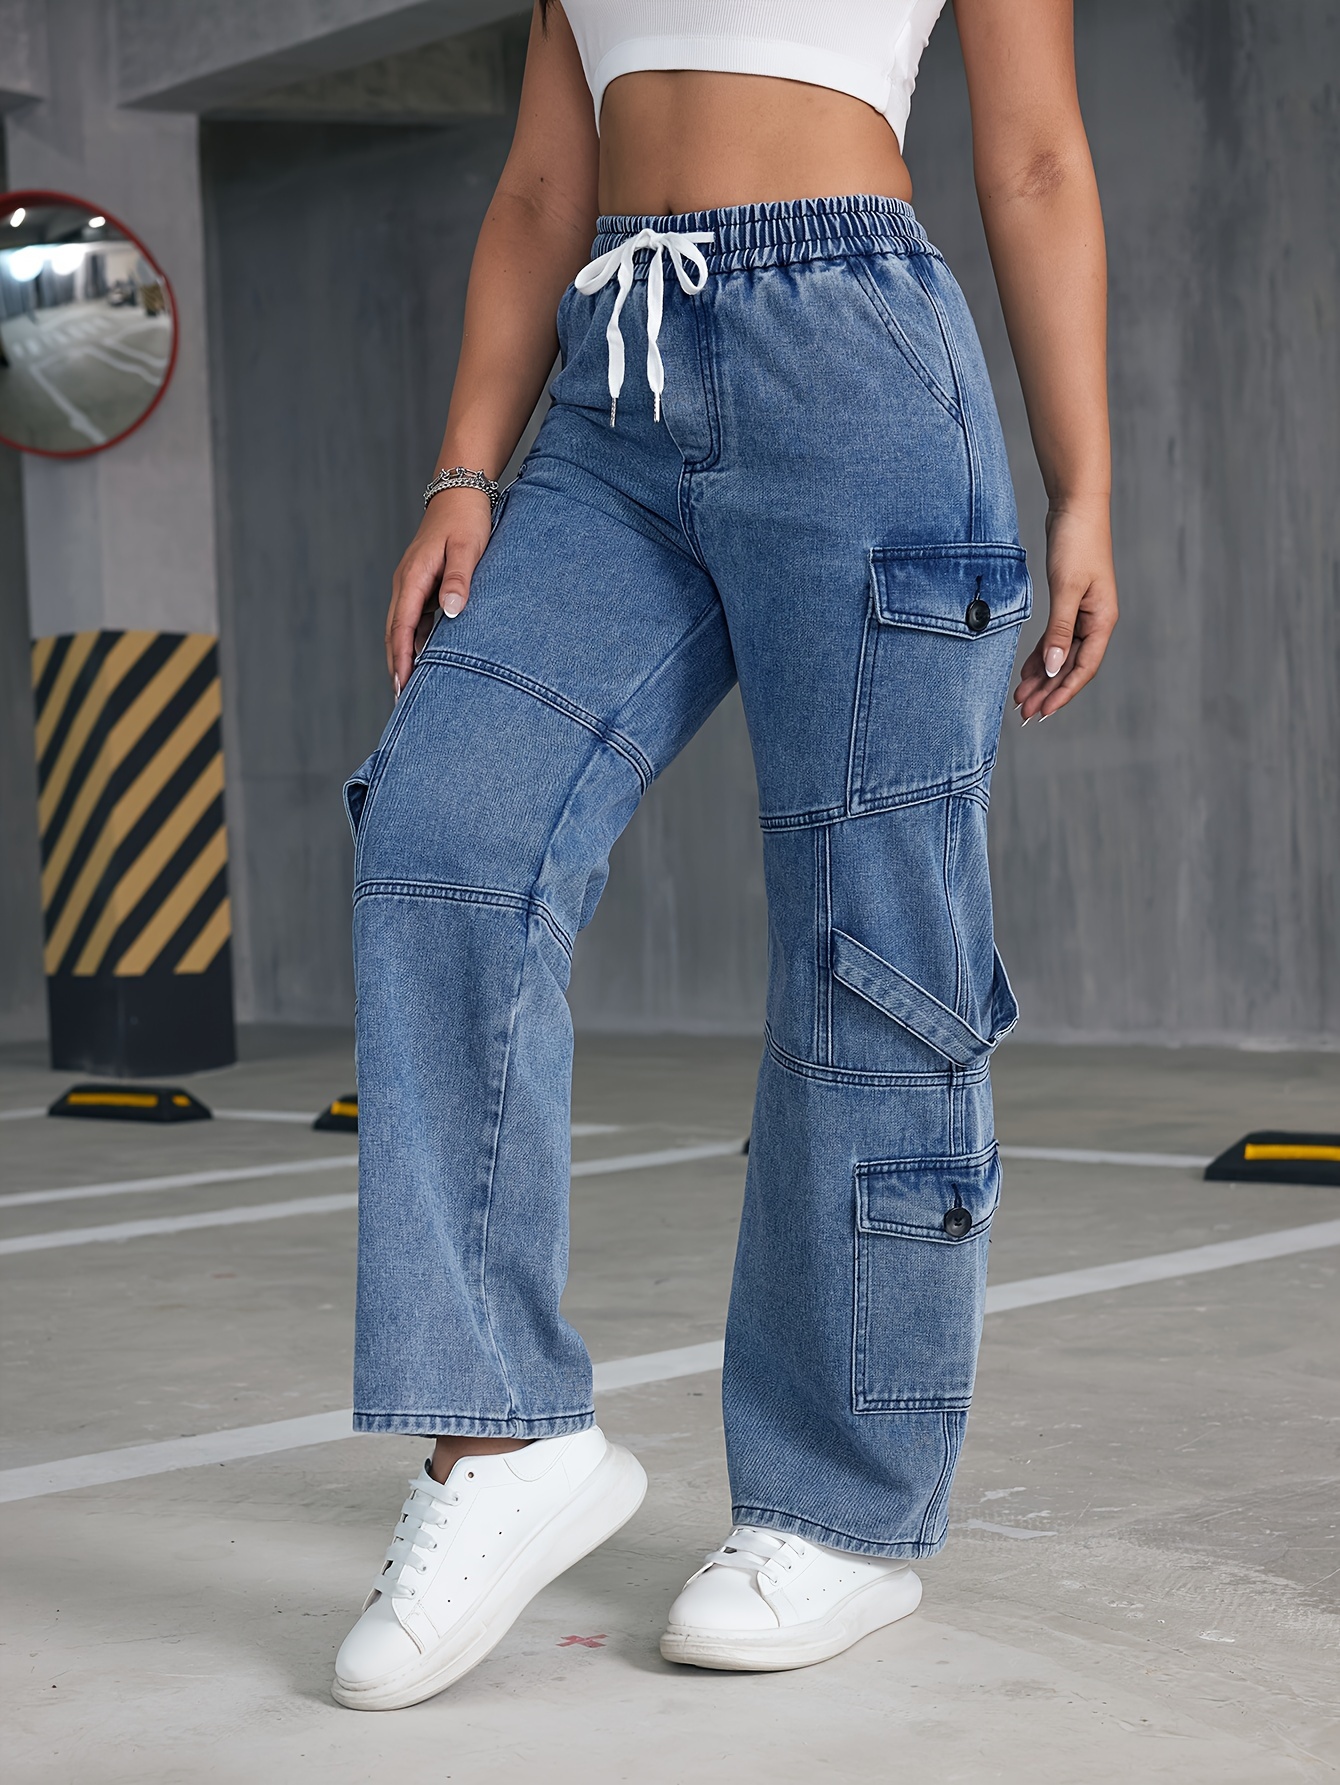 Pocket cargo jeans - Women